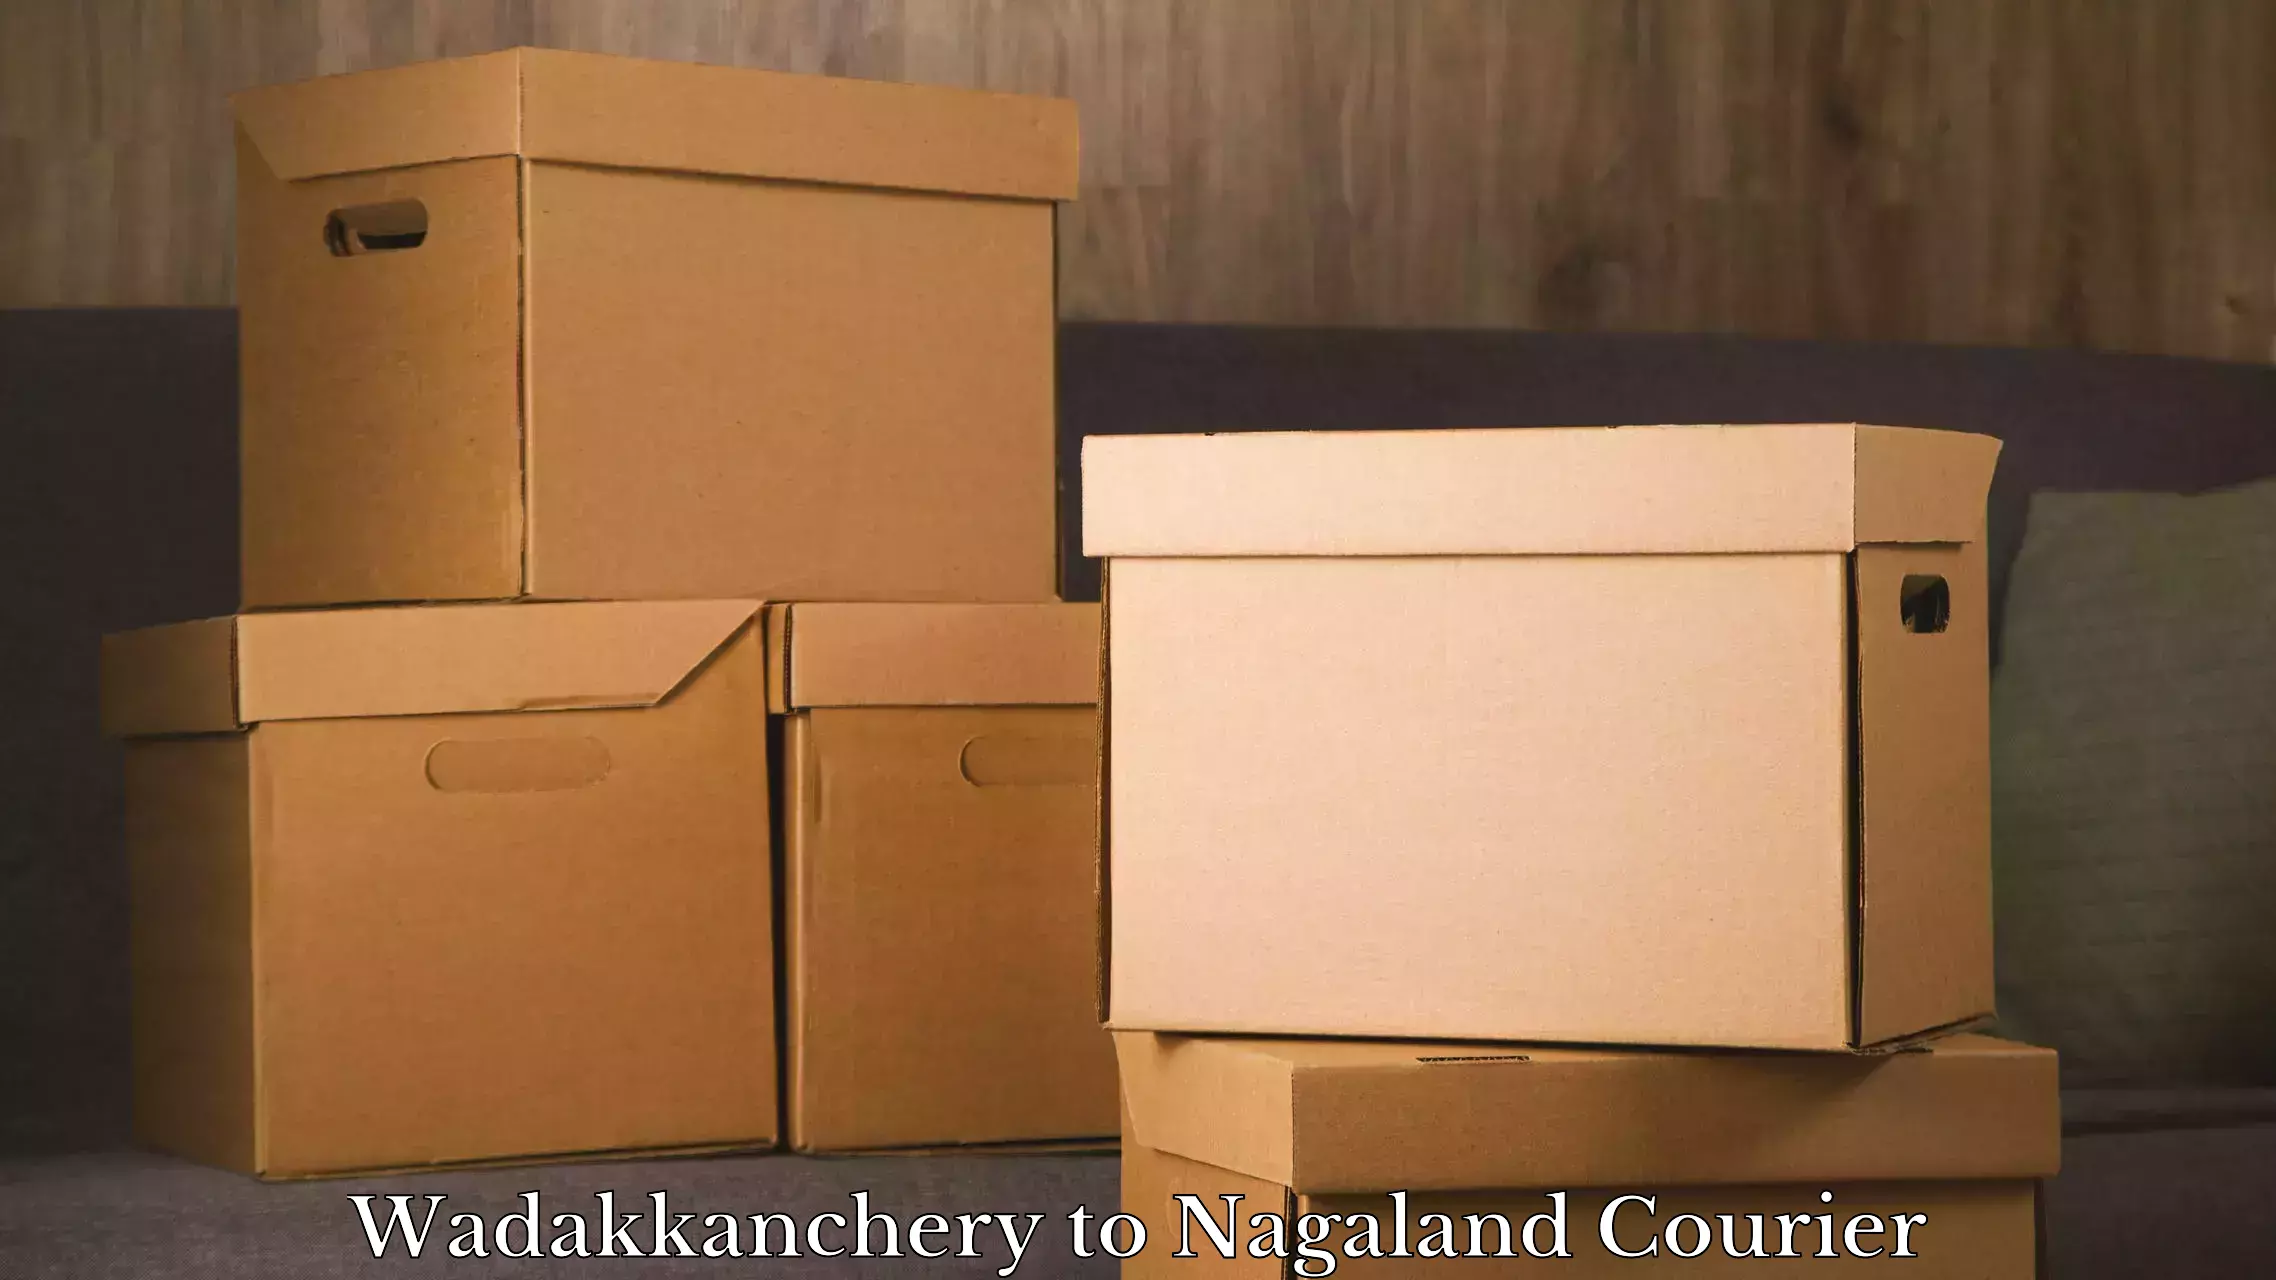 Luggage delivery network Wadakkanchery to Mokokchung